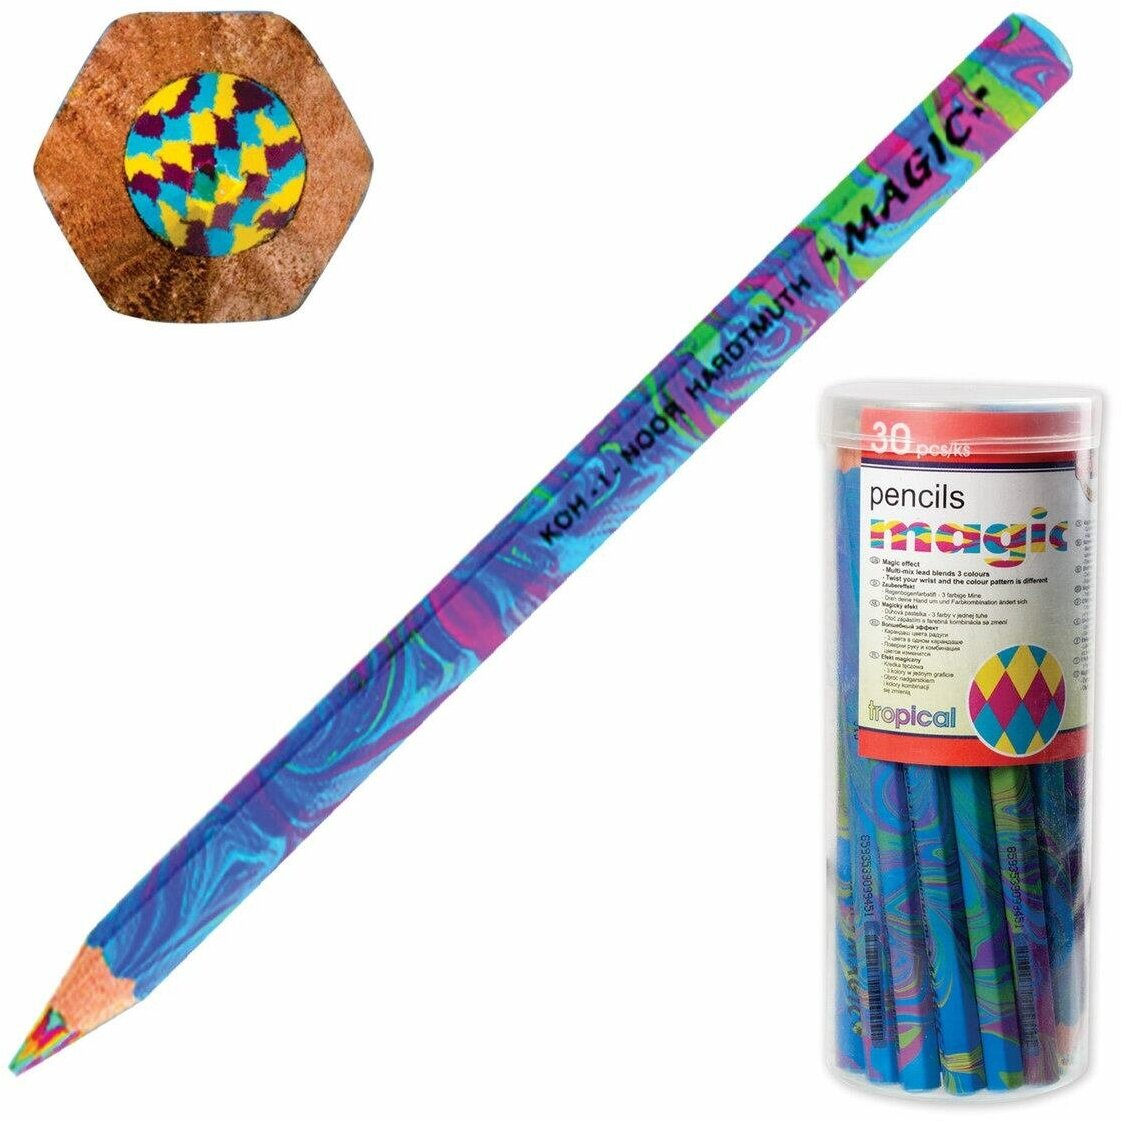 Карандаш с многоцветным грифелем KOH-I-NOOR 1 штука, Magic "Tropical", 5,6 мм, заточенный (3405002031TD)